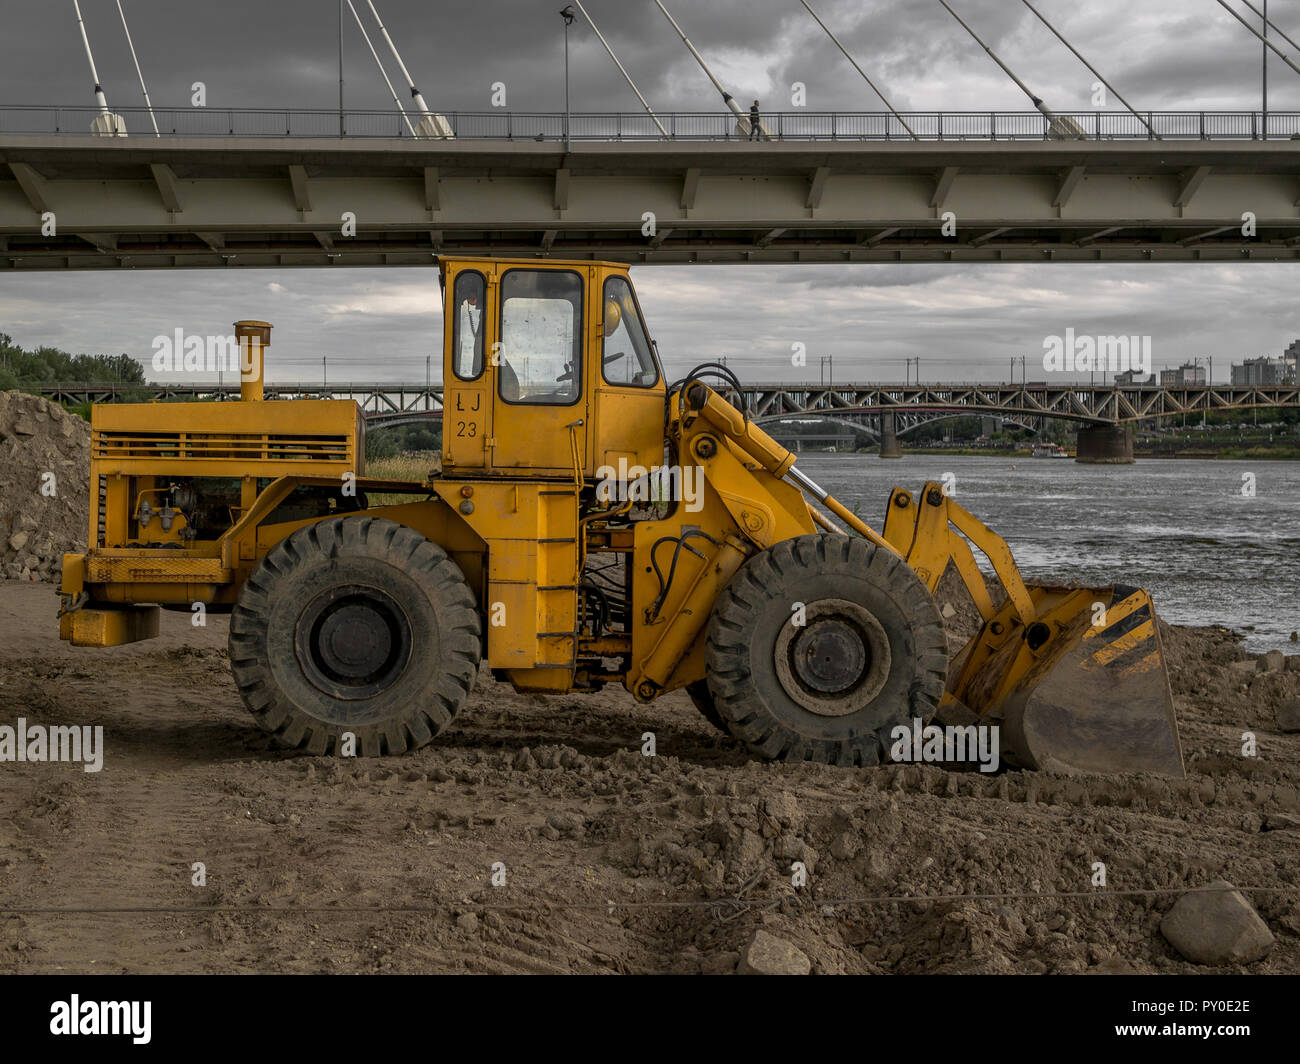 A yellow bulldozer next to a bridge. Stock Photo